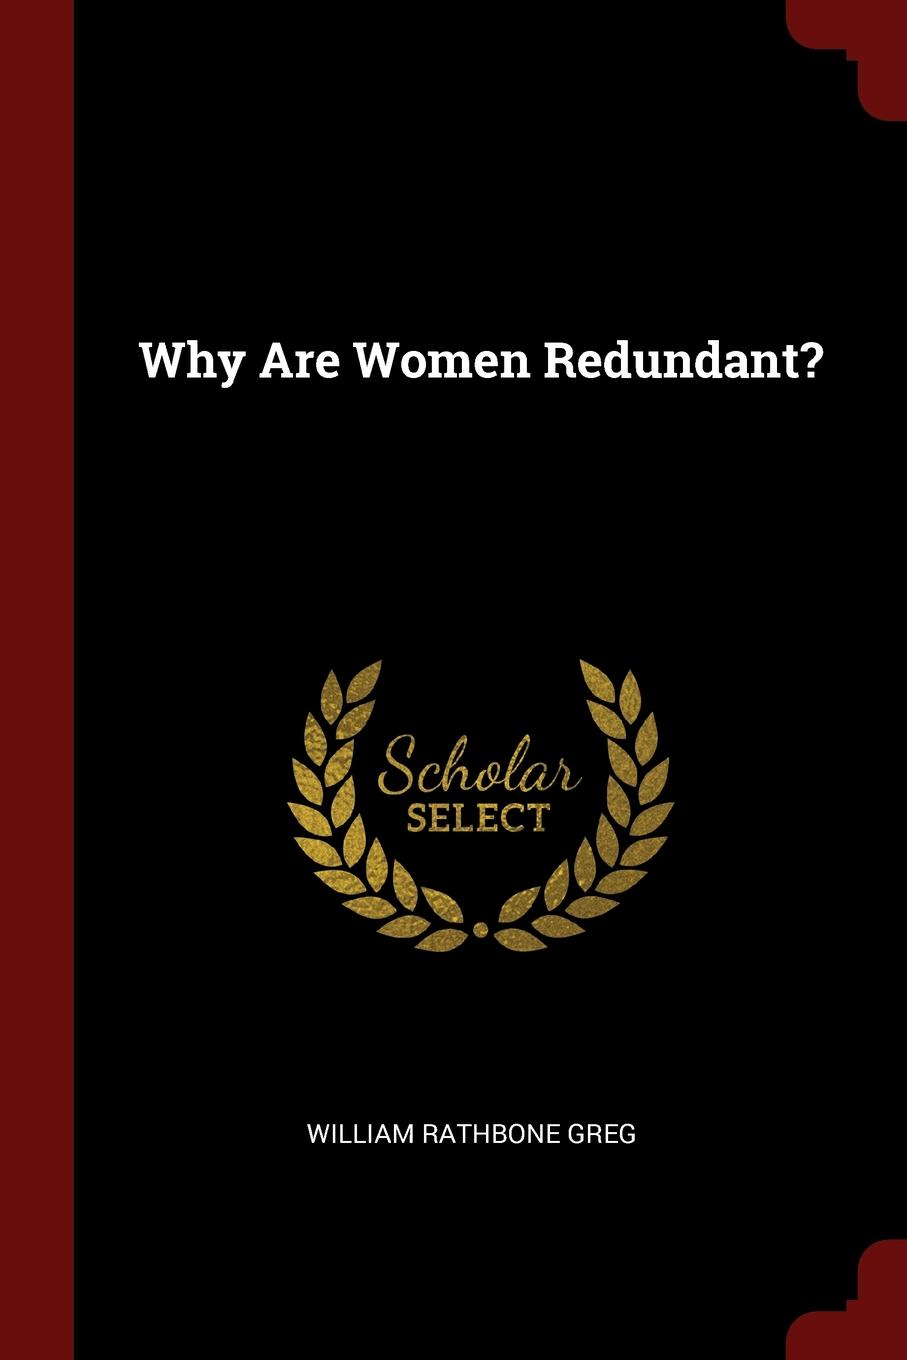 Why Are Women Redundant.